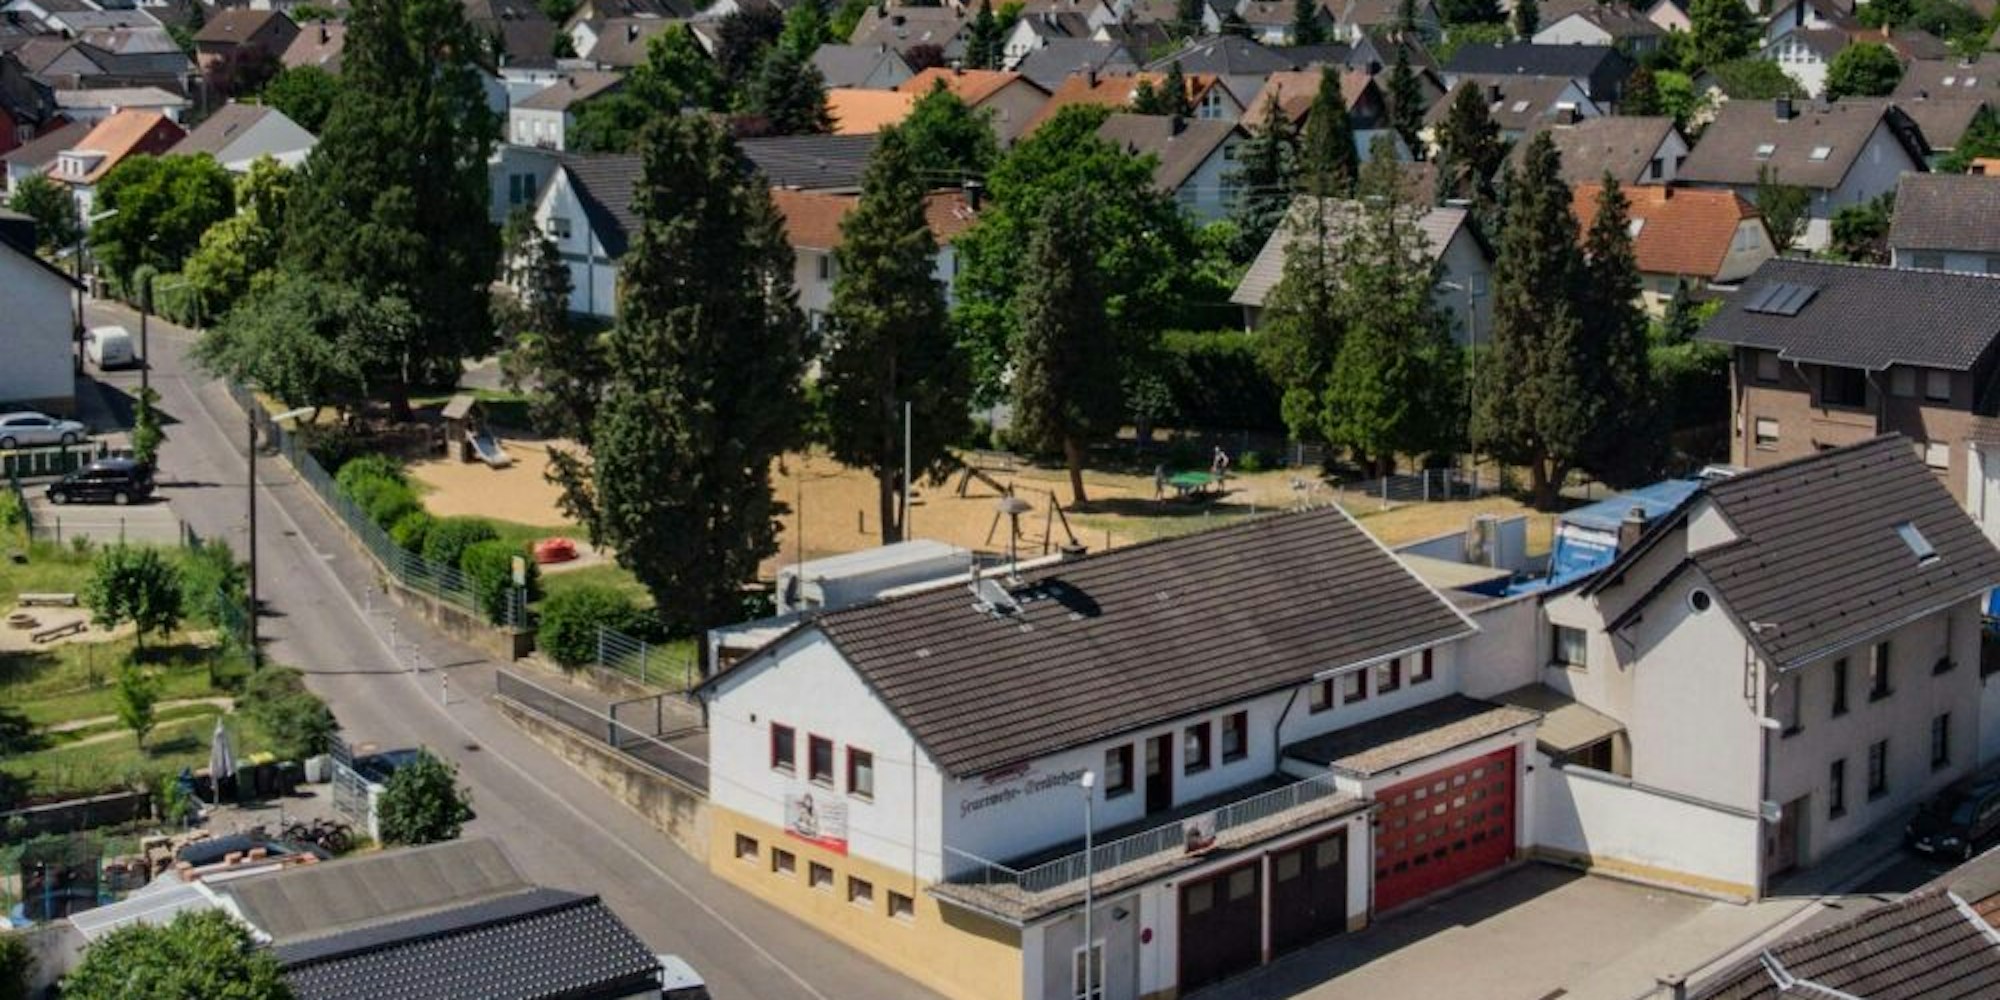 Aus dem Jahr 1958 stammt das mehrfach umgebaute Feuerwehrhaus von Witterschlick.